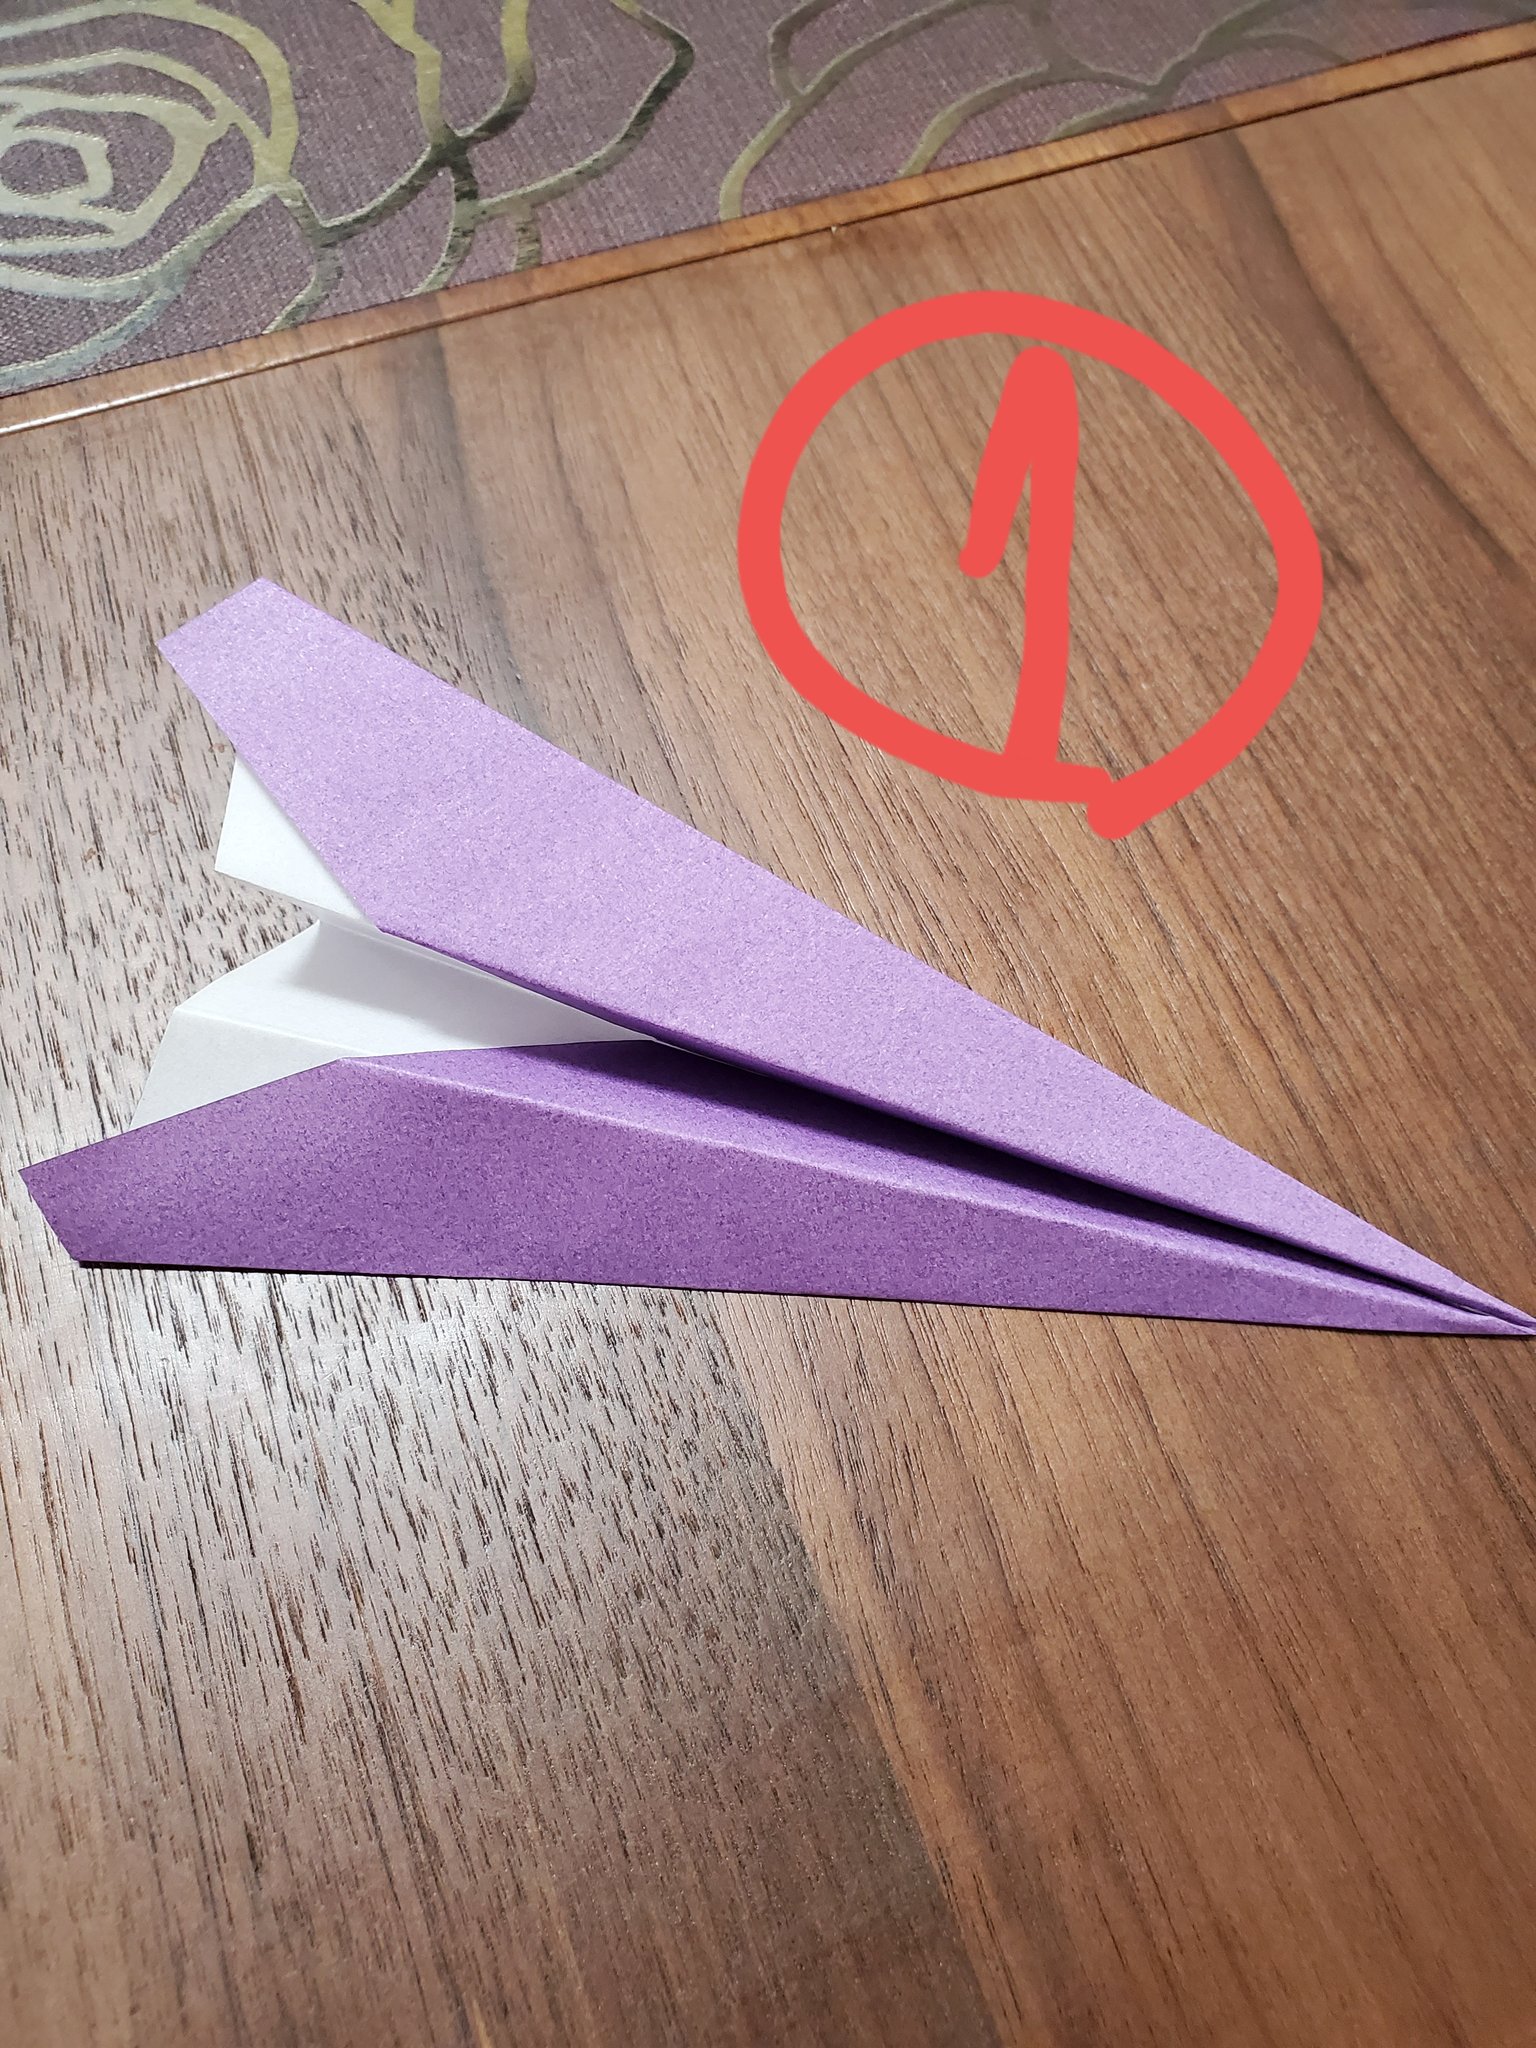 井澤秋乃 囲碁棋士 息子が紙飛行機に興味を持ったのでyoutubeで学んで実践 普通の紙飛行機 最強の紙飛行機 2つを重ねて ダブル合体だ と喜ぶ息子 さて どれが一番飛ぶでしょうか T Co Tprrqkhoo7 Twitter